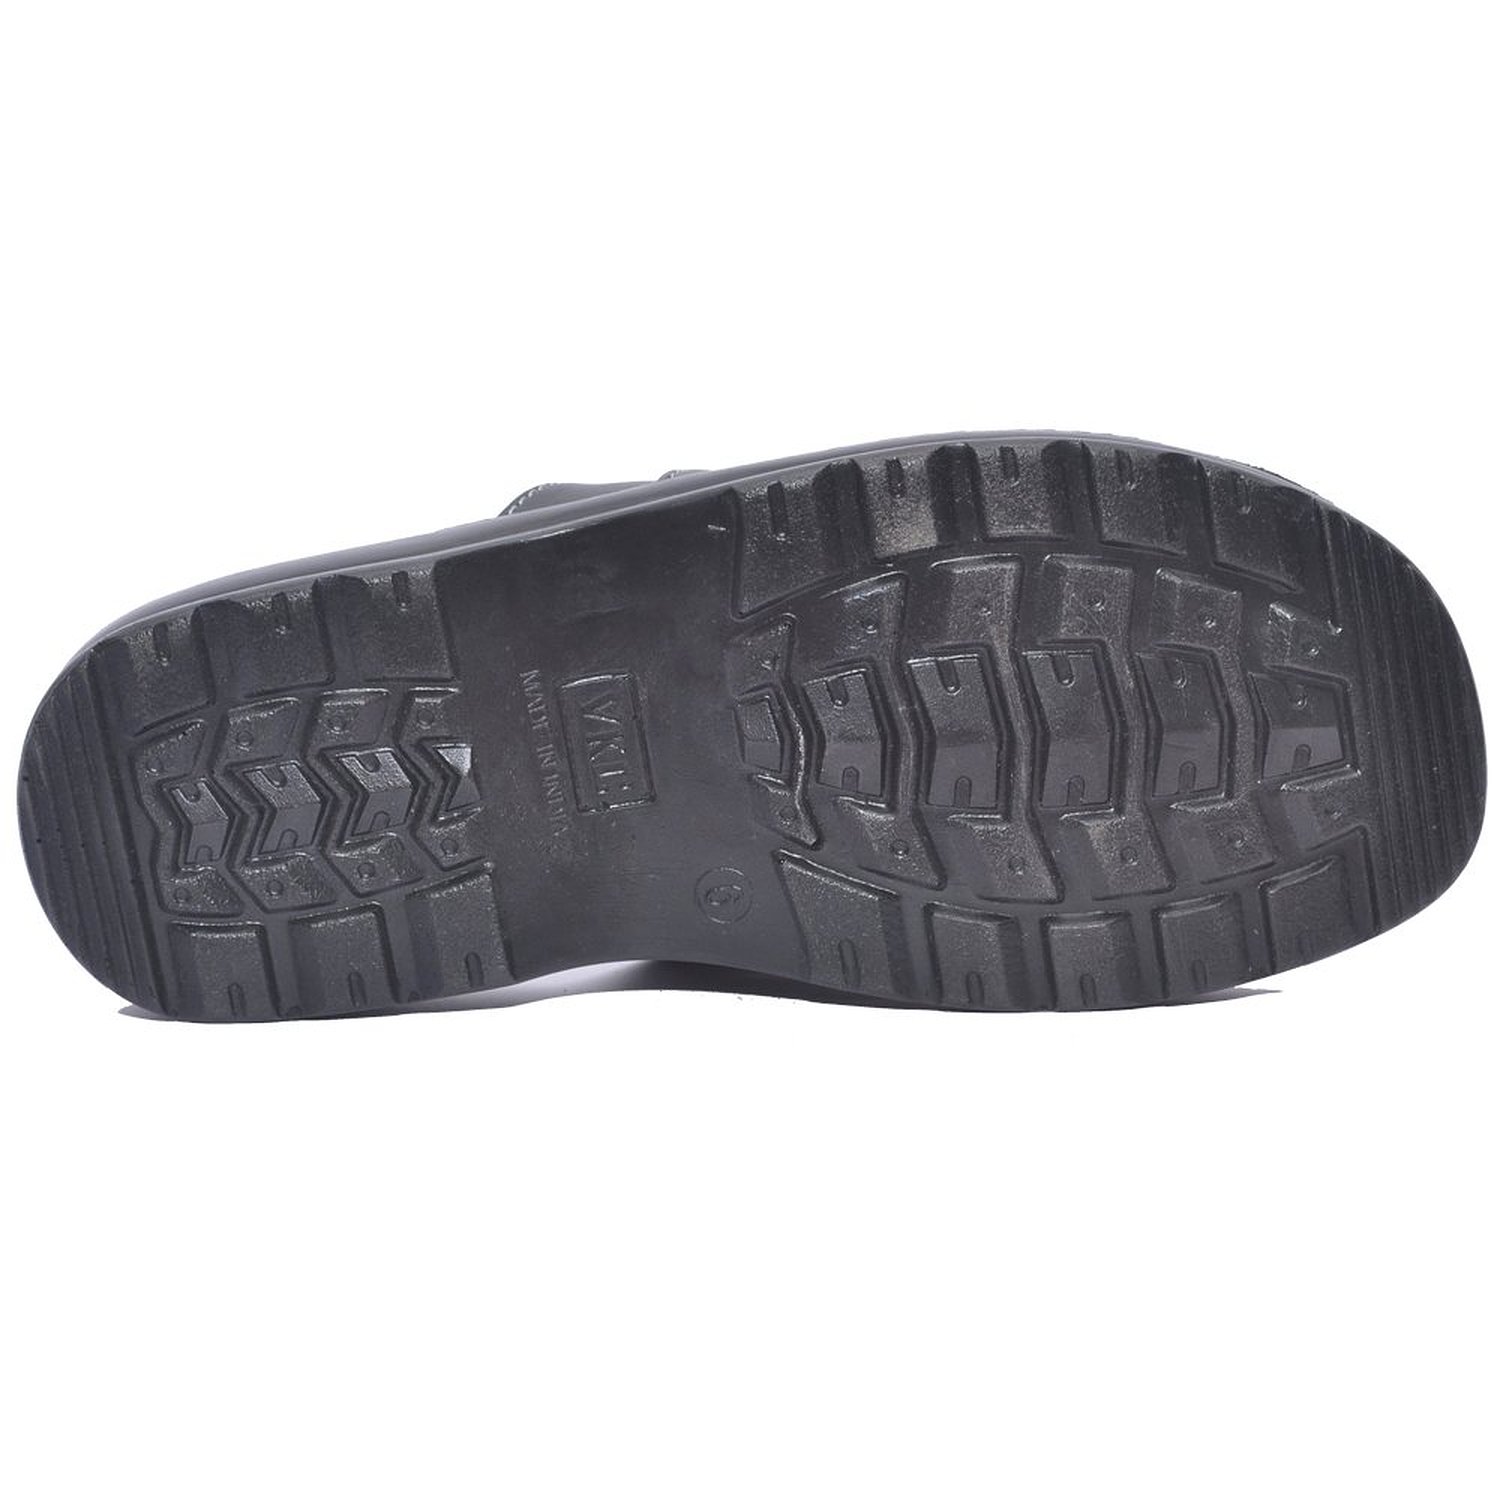 VKC Pride Black Slippers for Men - 1038: Buy Online from ShopClues.com